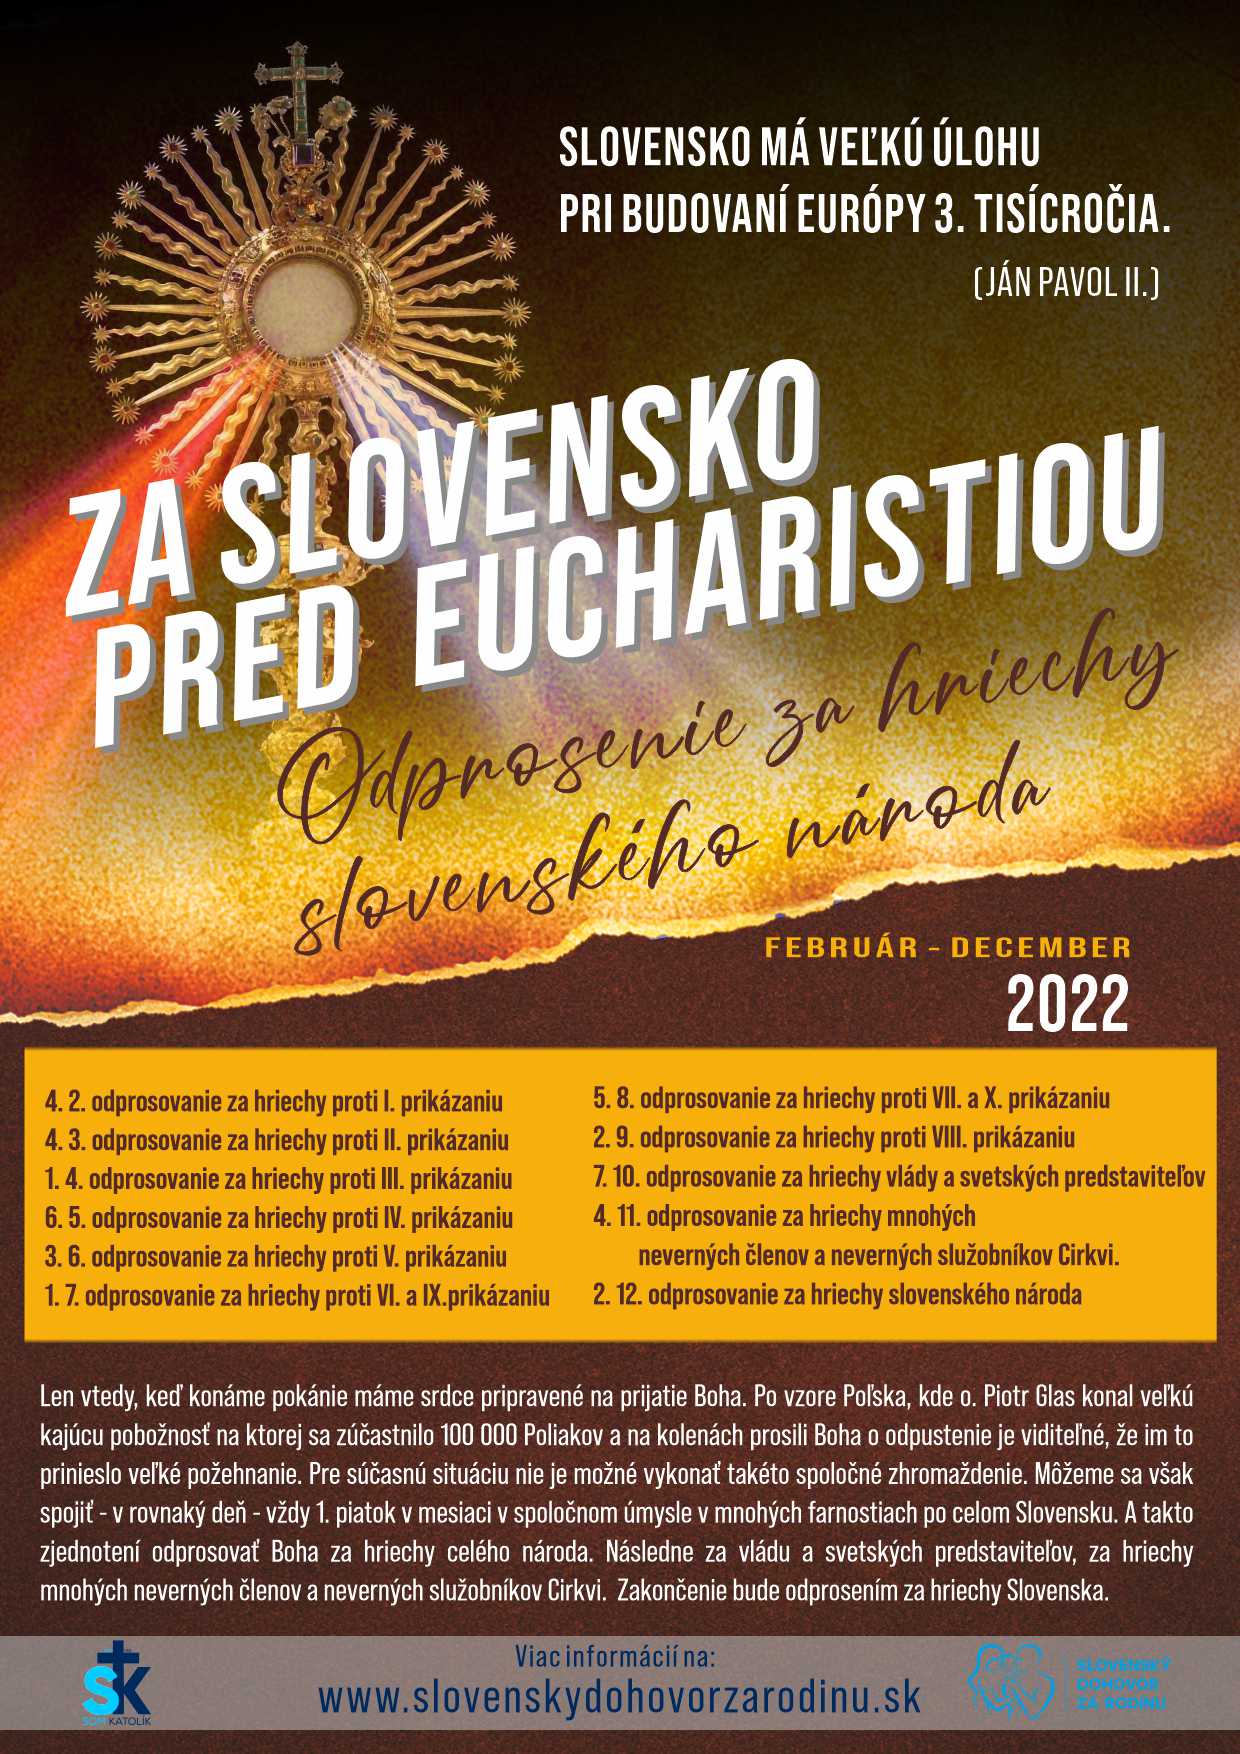 Za Slovensko pred Eucharistiou